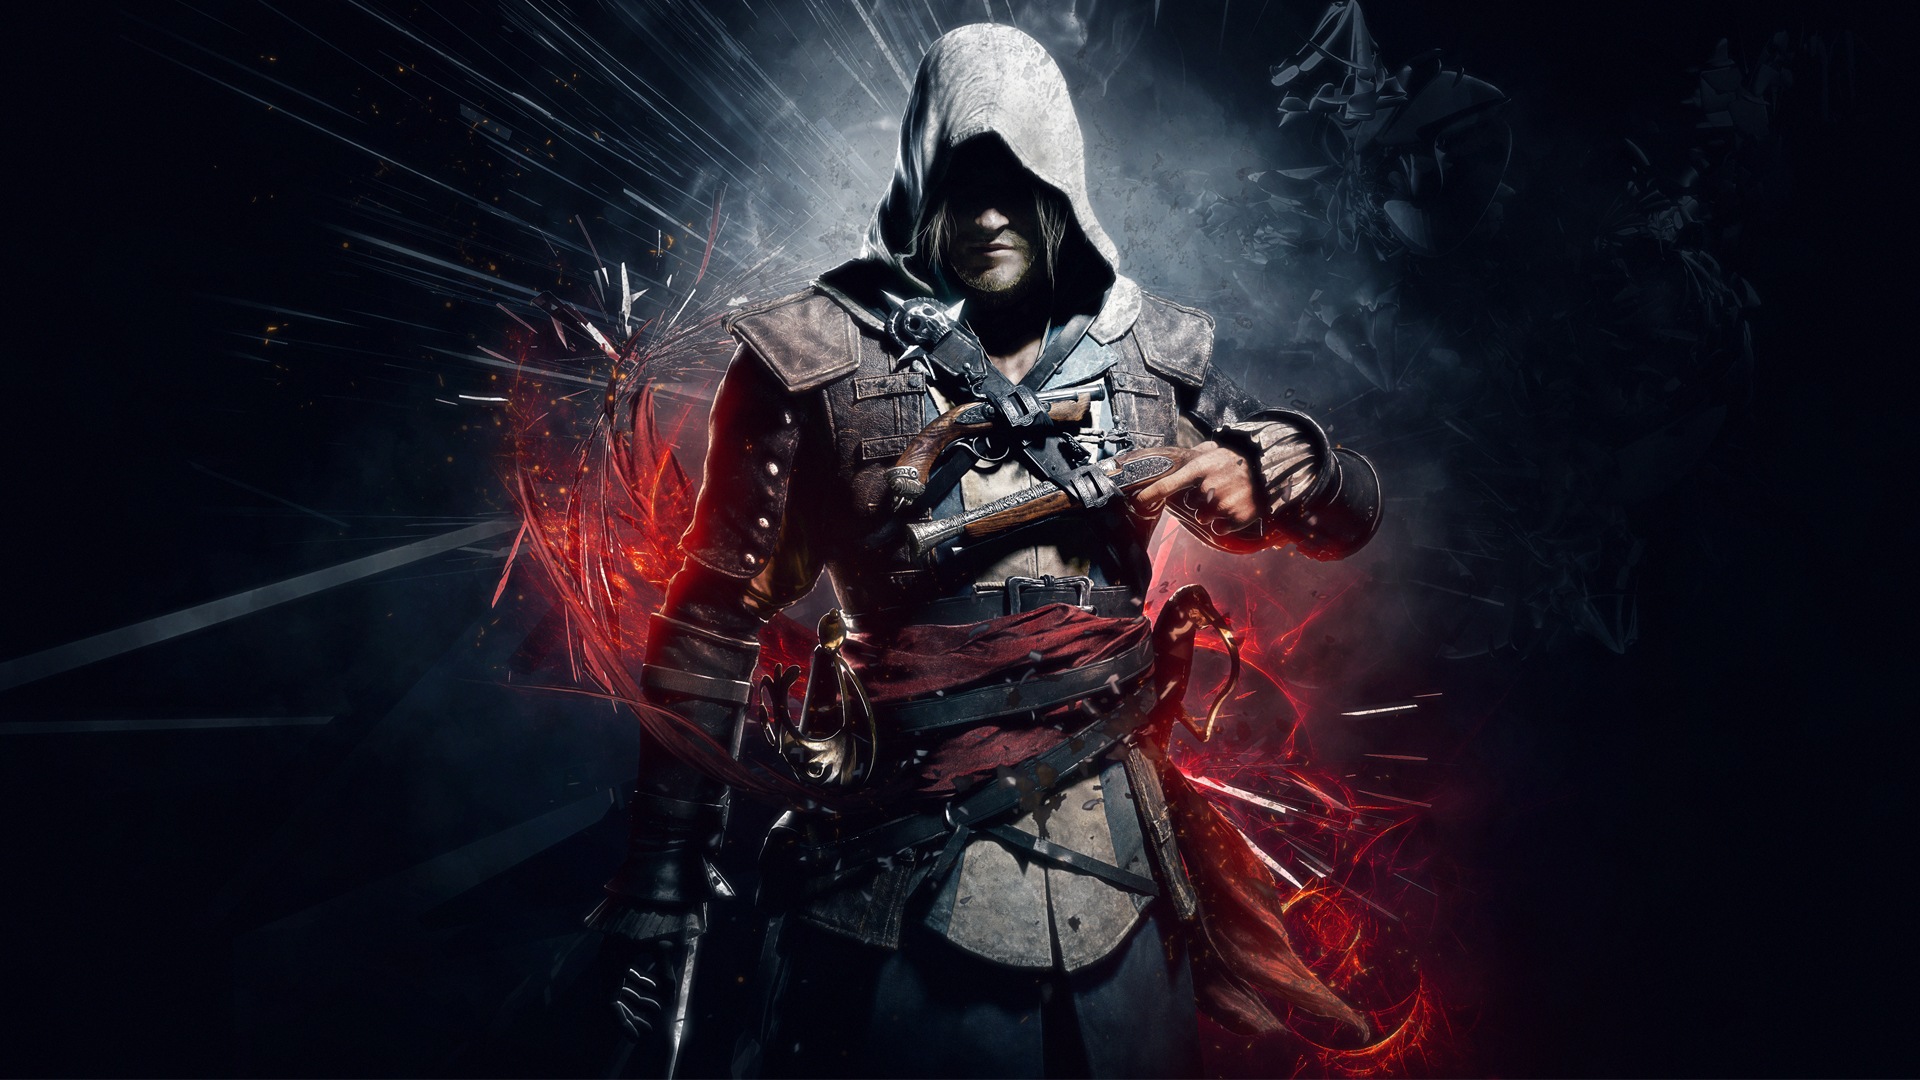 Assassins Creed 4: Black Flag HD Wallpaper #1 - 1920x1080